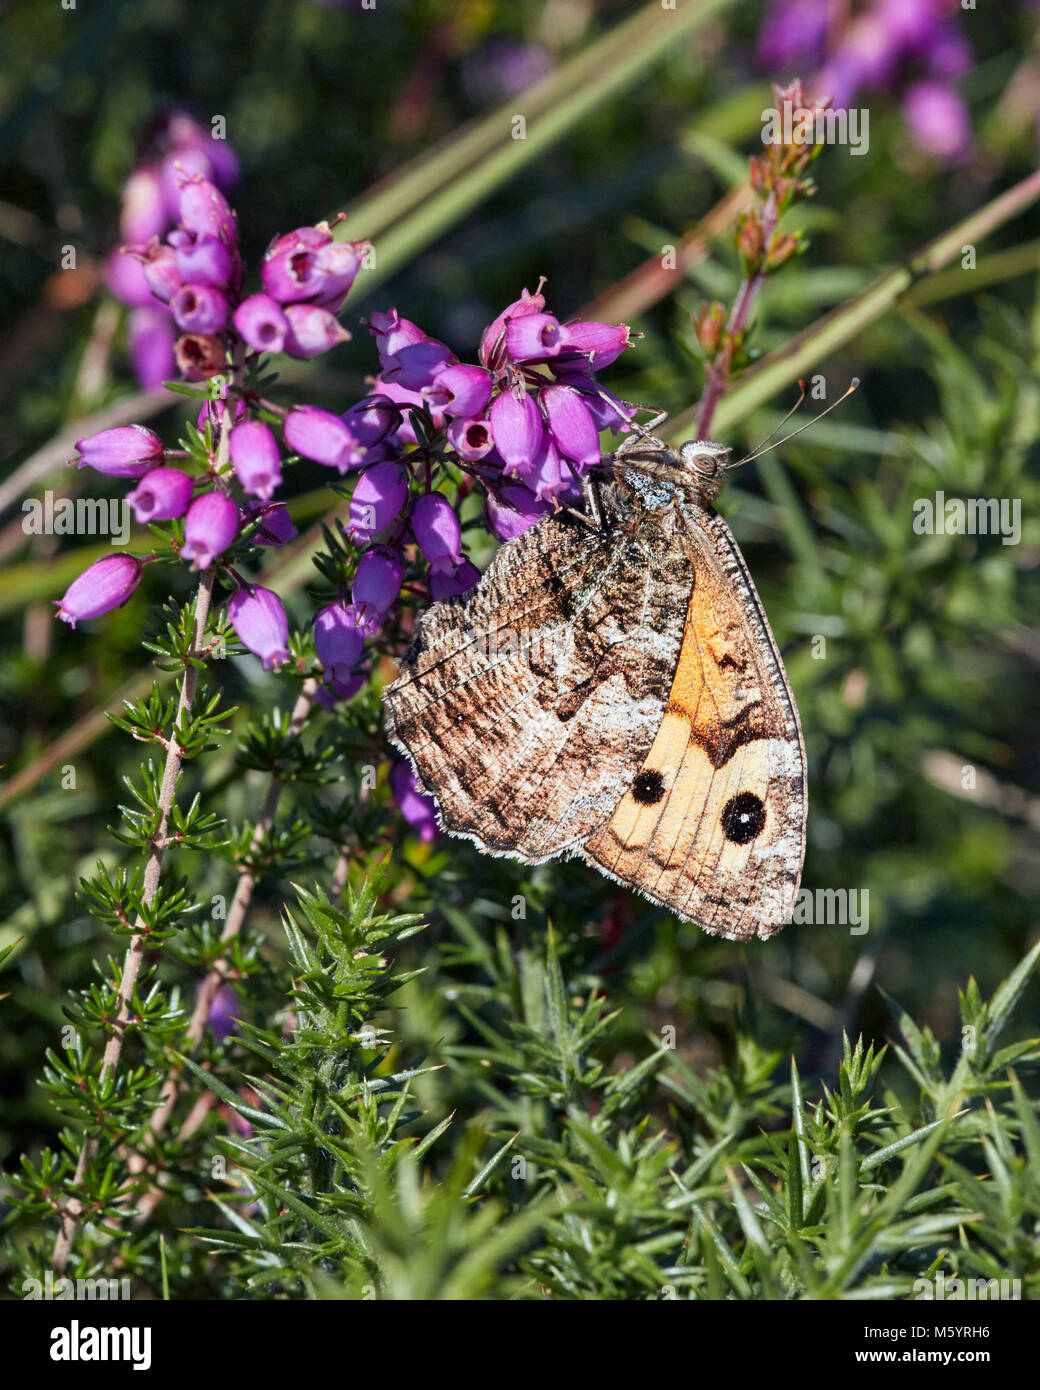 Grayling butterfly encaramado en Bell Heather. Común Chobham, Surrey, Inglaterra. Foto de stock